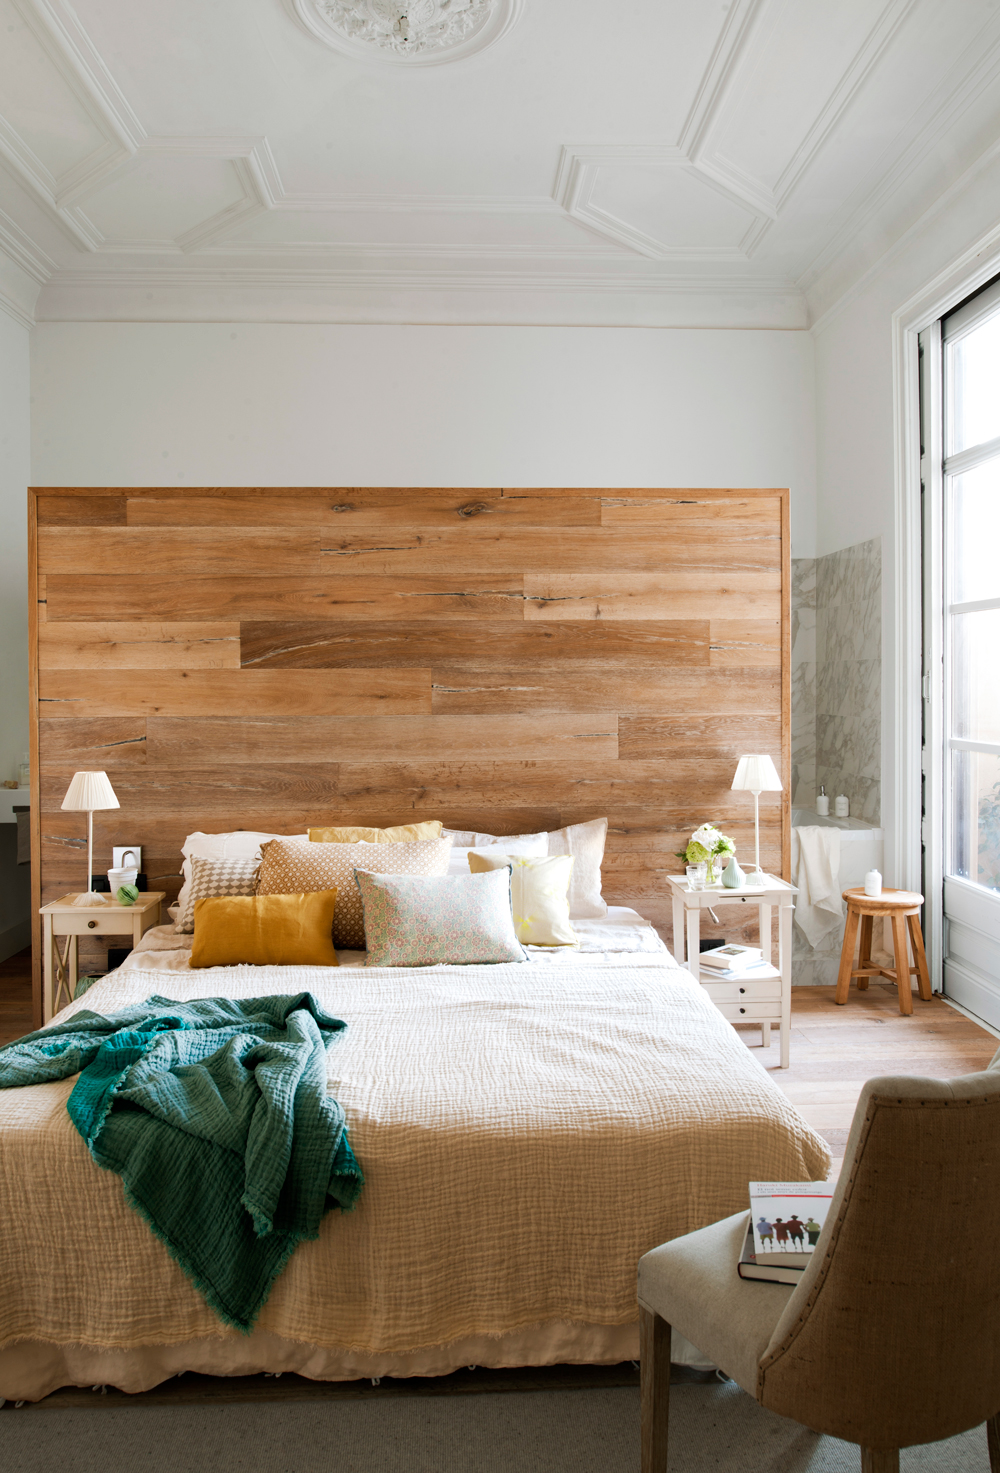 Dormitorio regio con murete revestido de lamas de madera que separa del baño